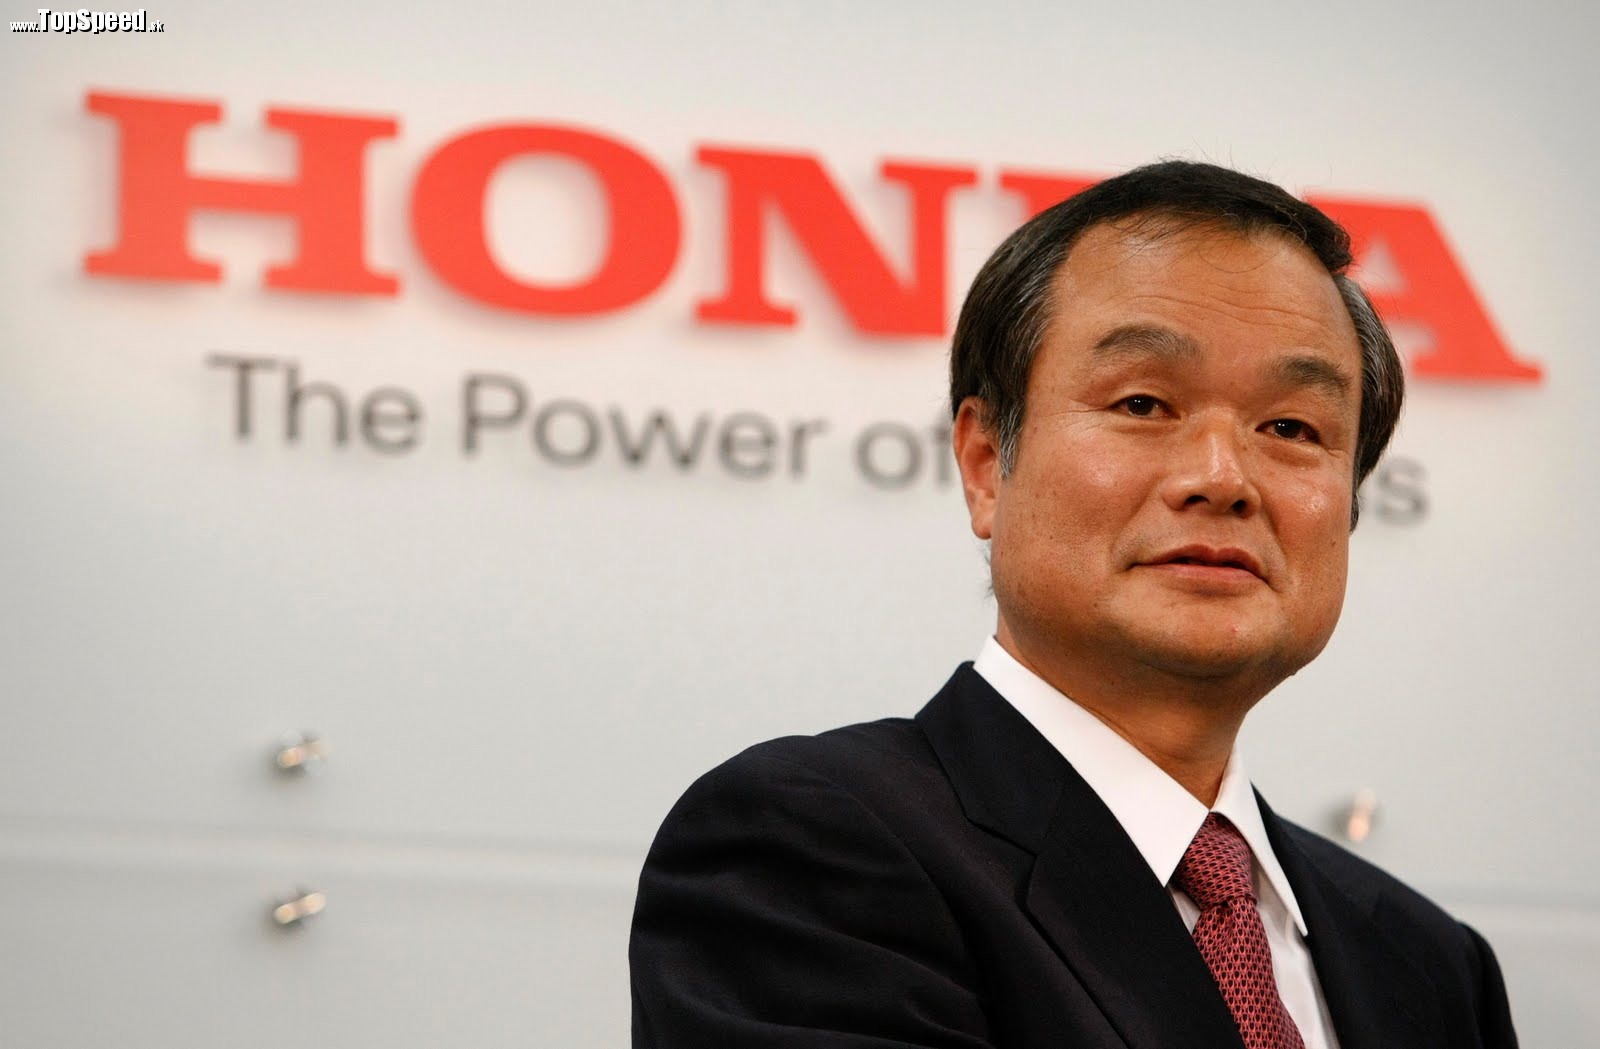 Takanobu Ito je prezident spoločnosti Honda. Jeho tvrdenia teda budú pravdivé.